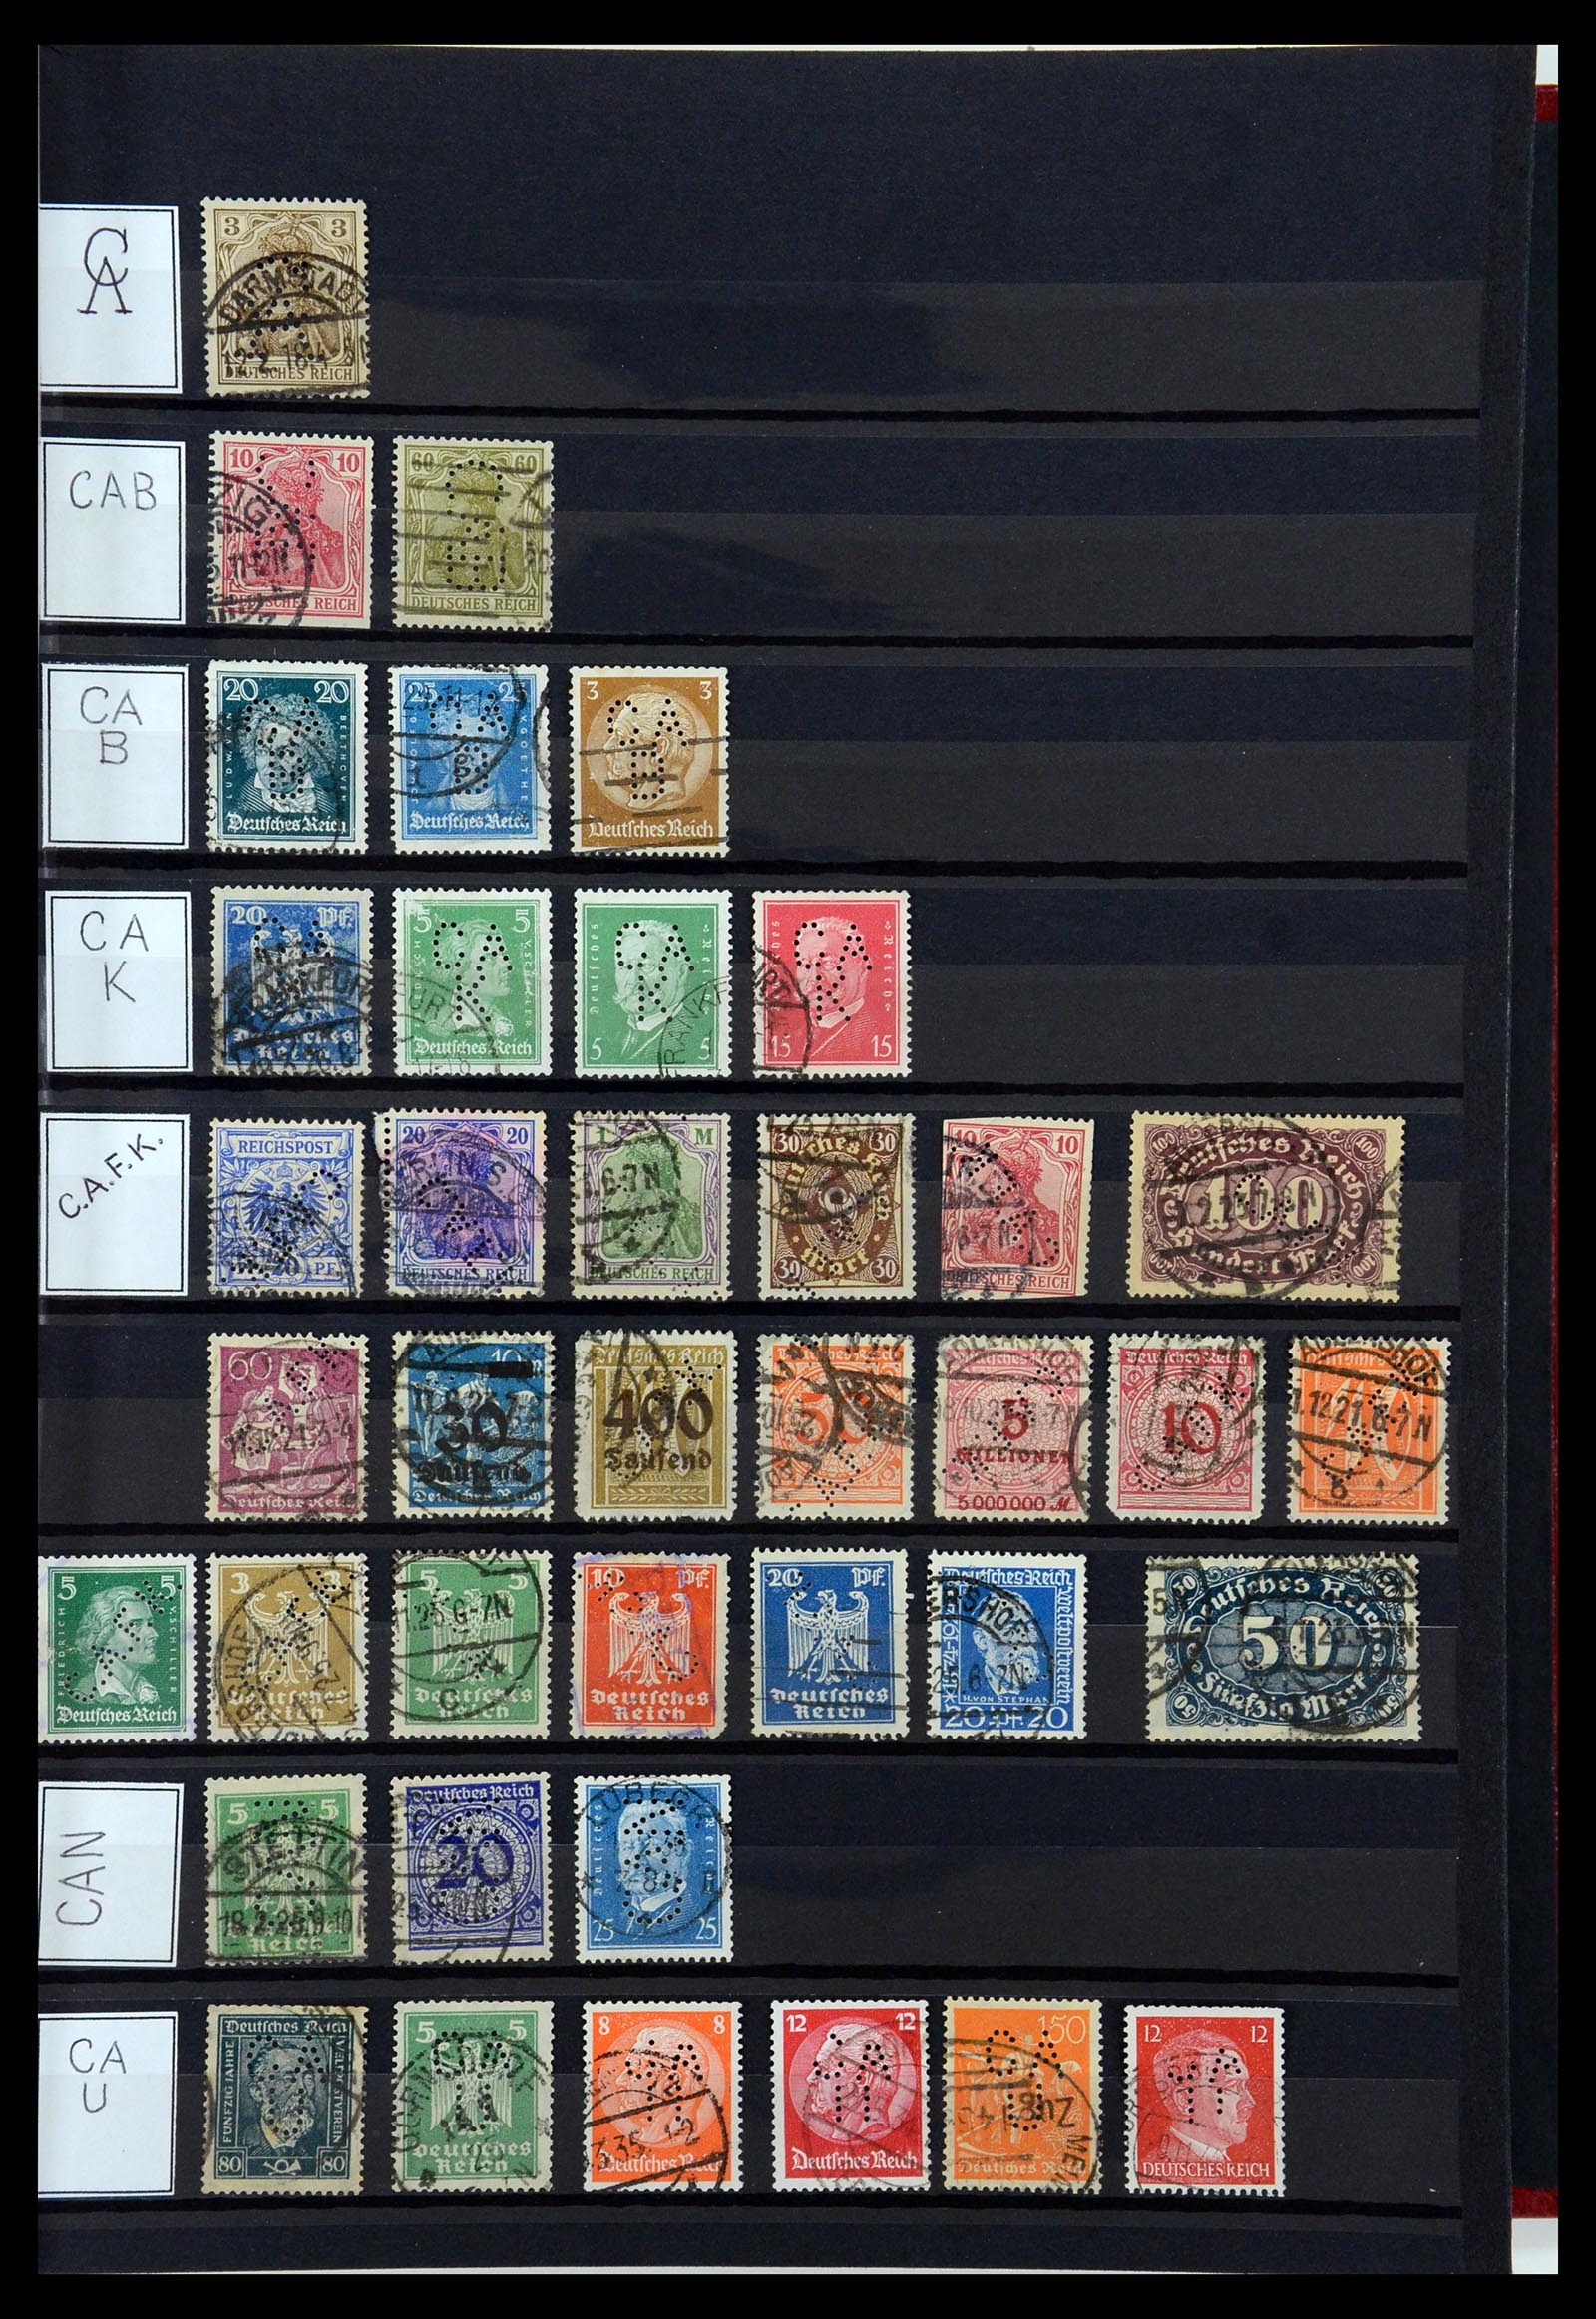 36405 057 - Stamp collection 36405 German Reich perfins 1880-1945.